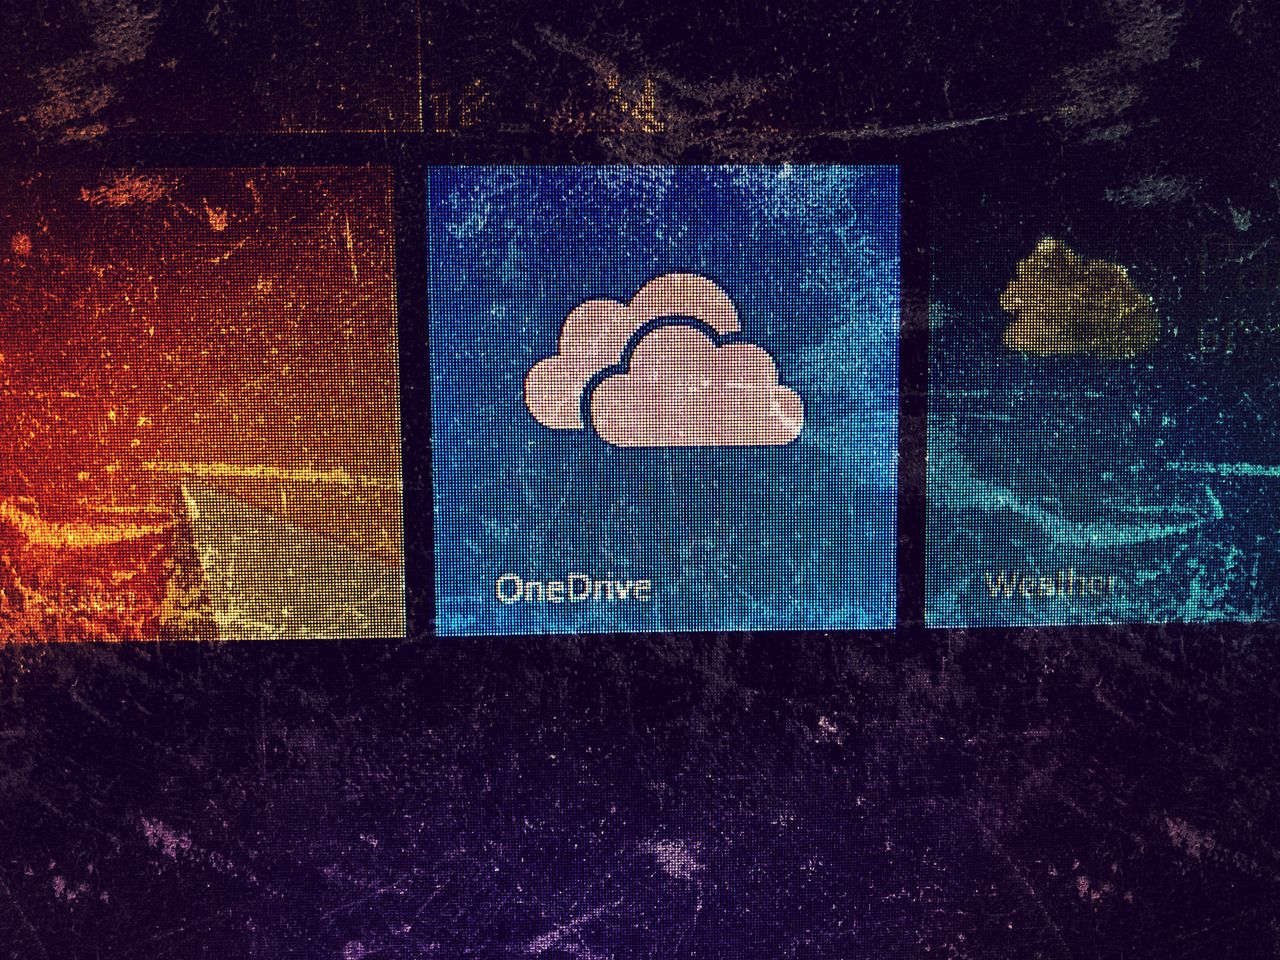 Windows 8.1 umiera: OneDrive nie działa, koniec wsparcia za pół roku